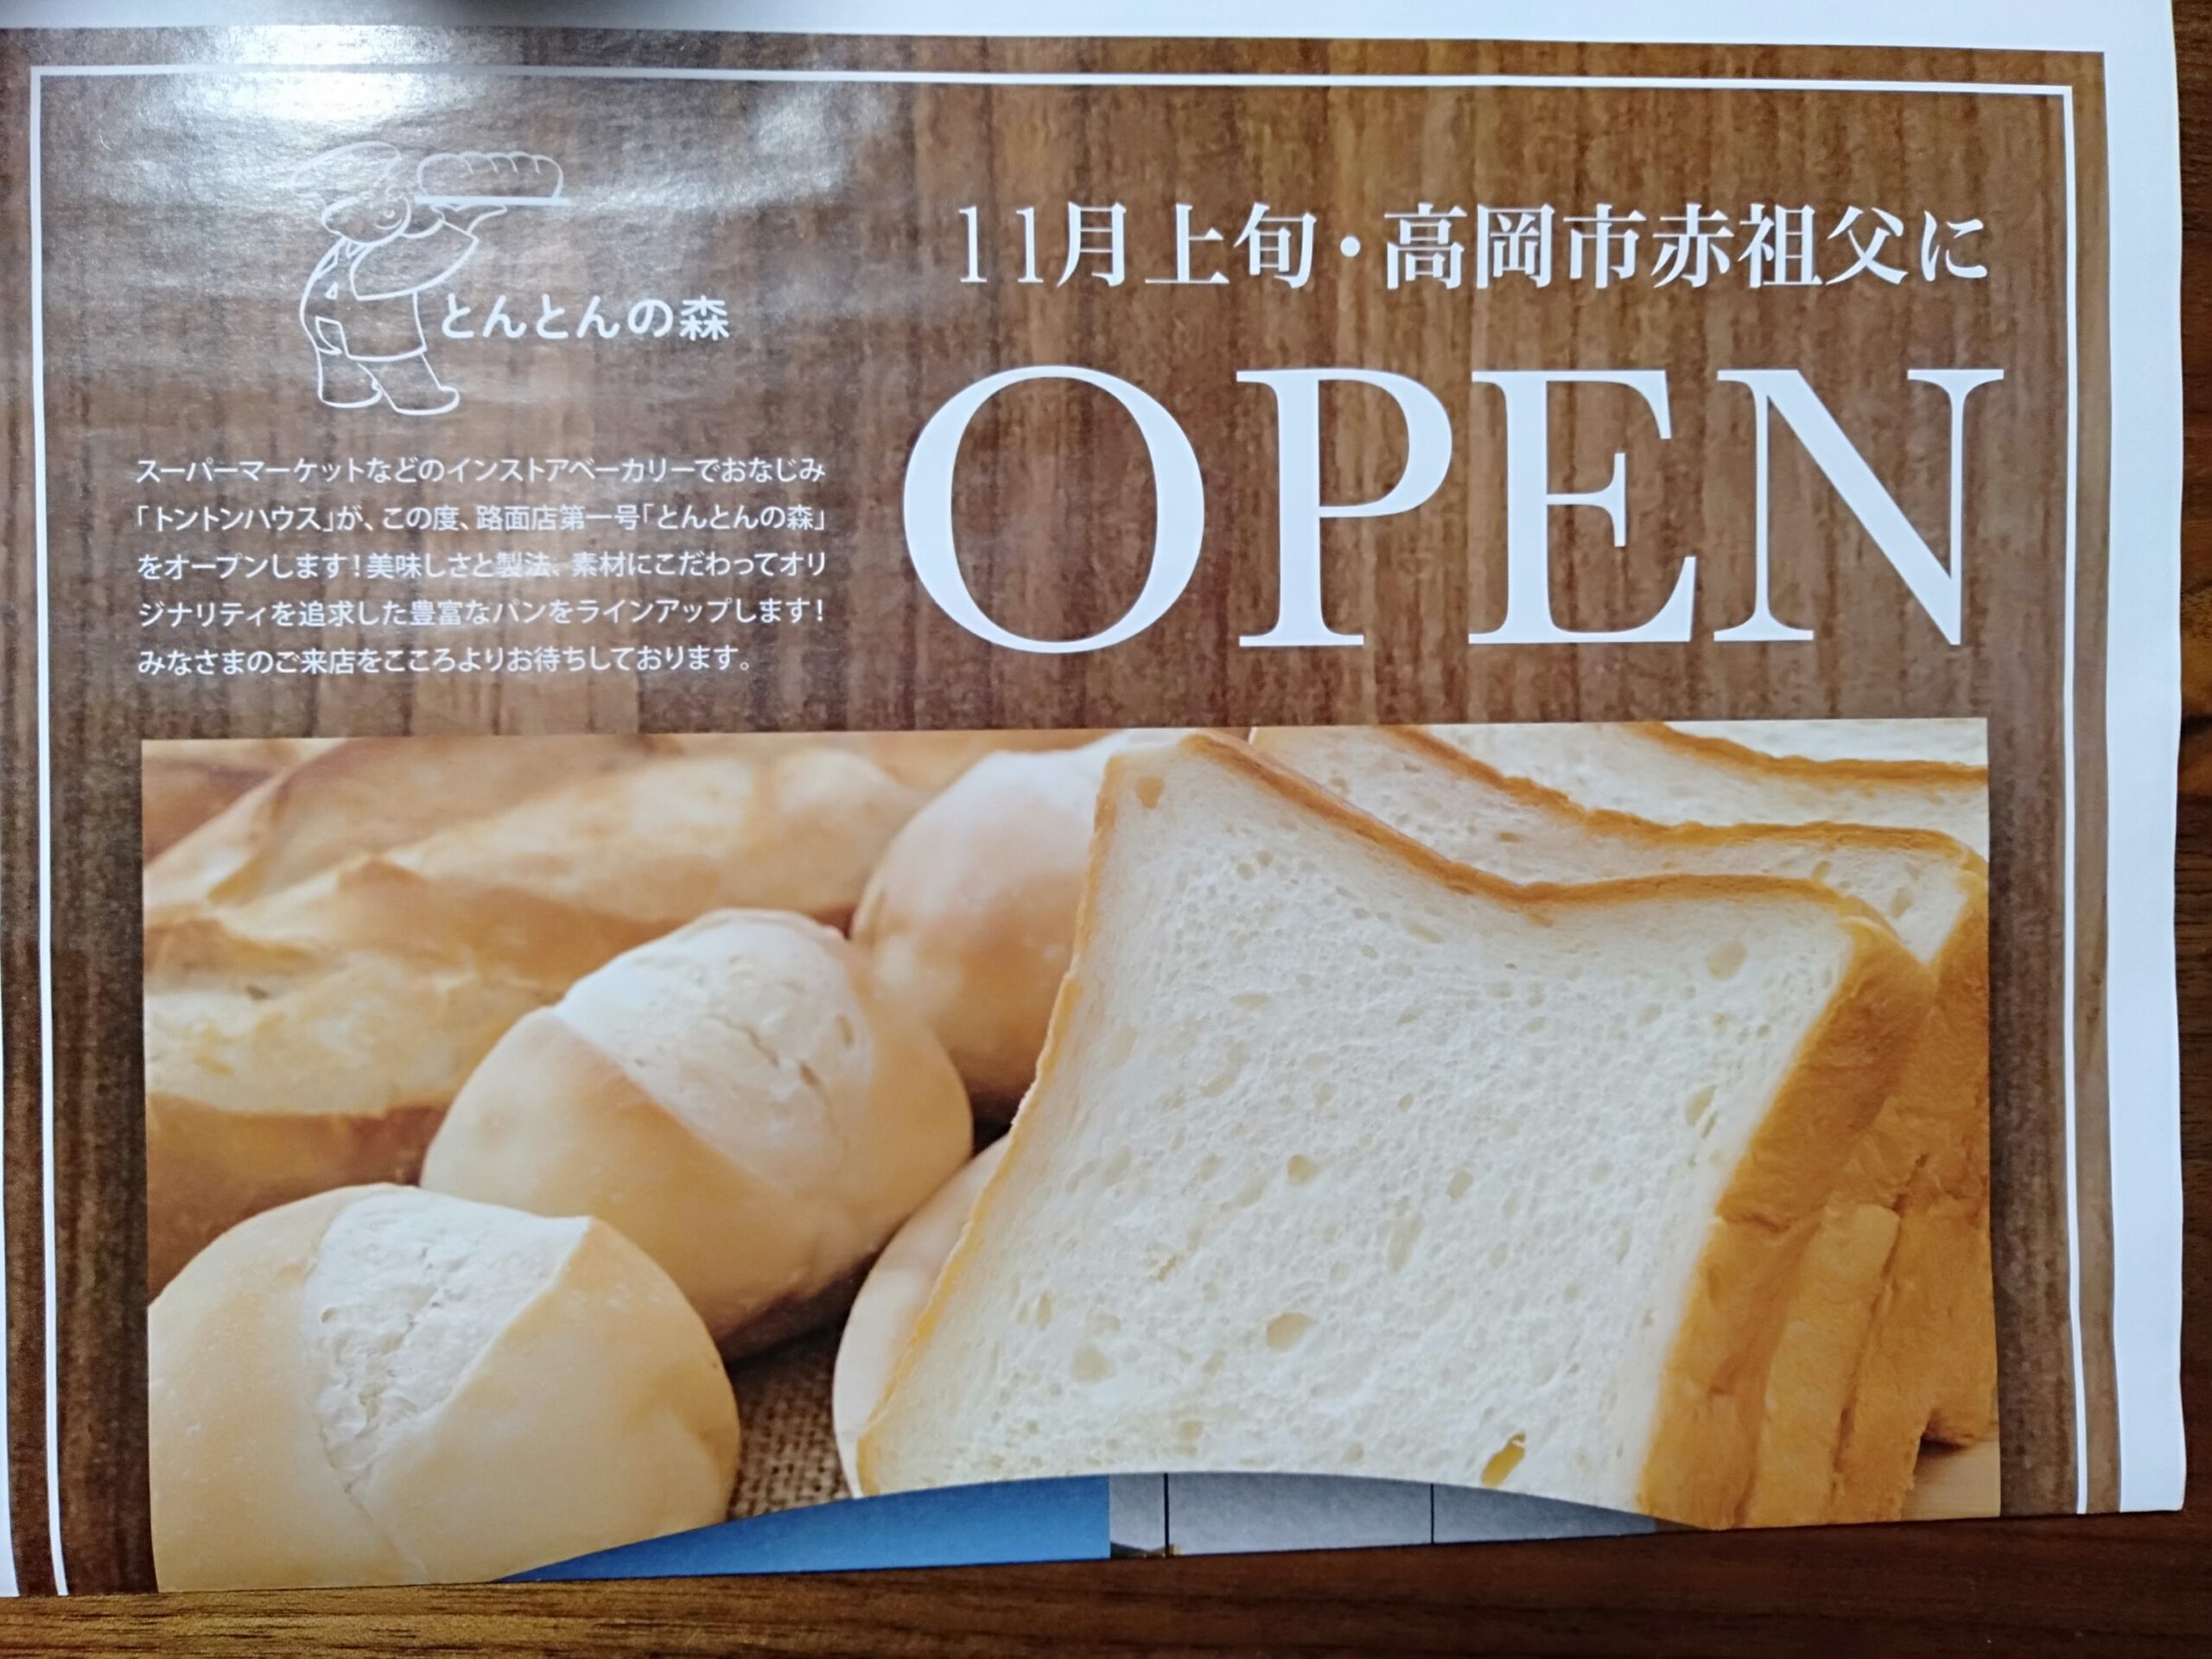 11月3日、高岡市赤祖父にパン屋『とんとんの森』が新規オープンするらしい。